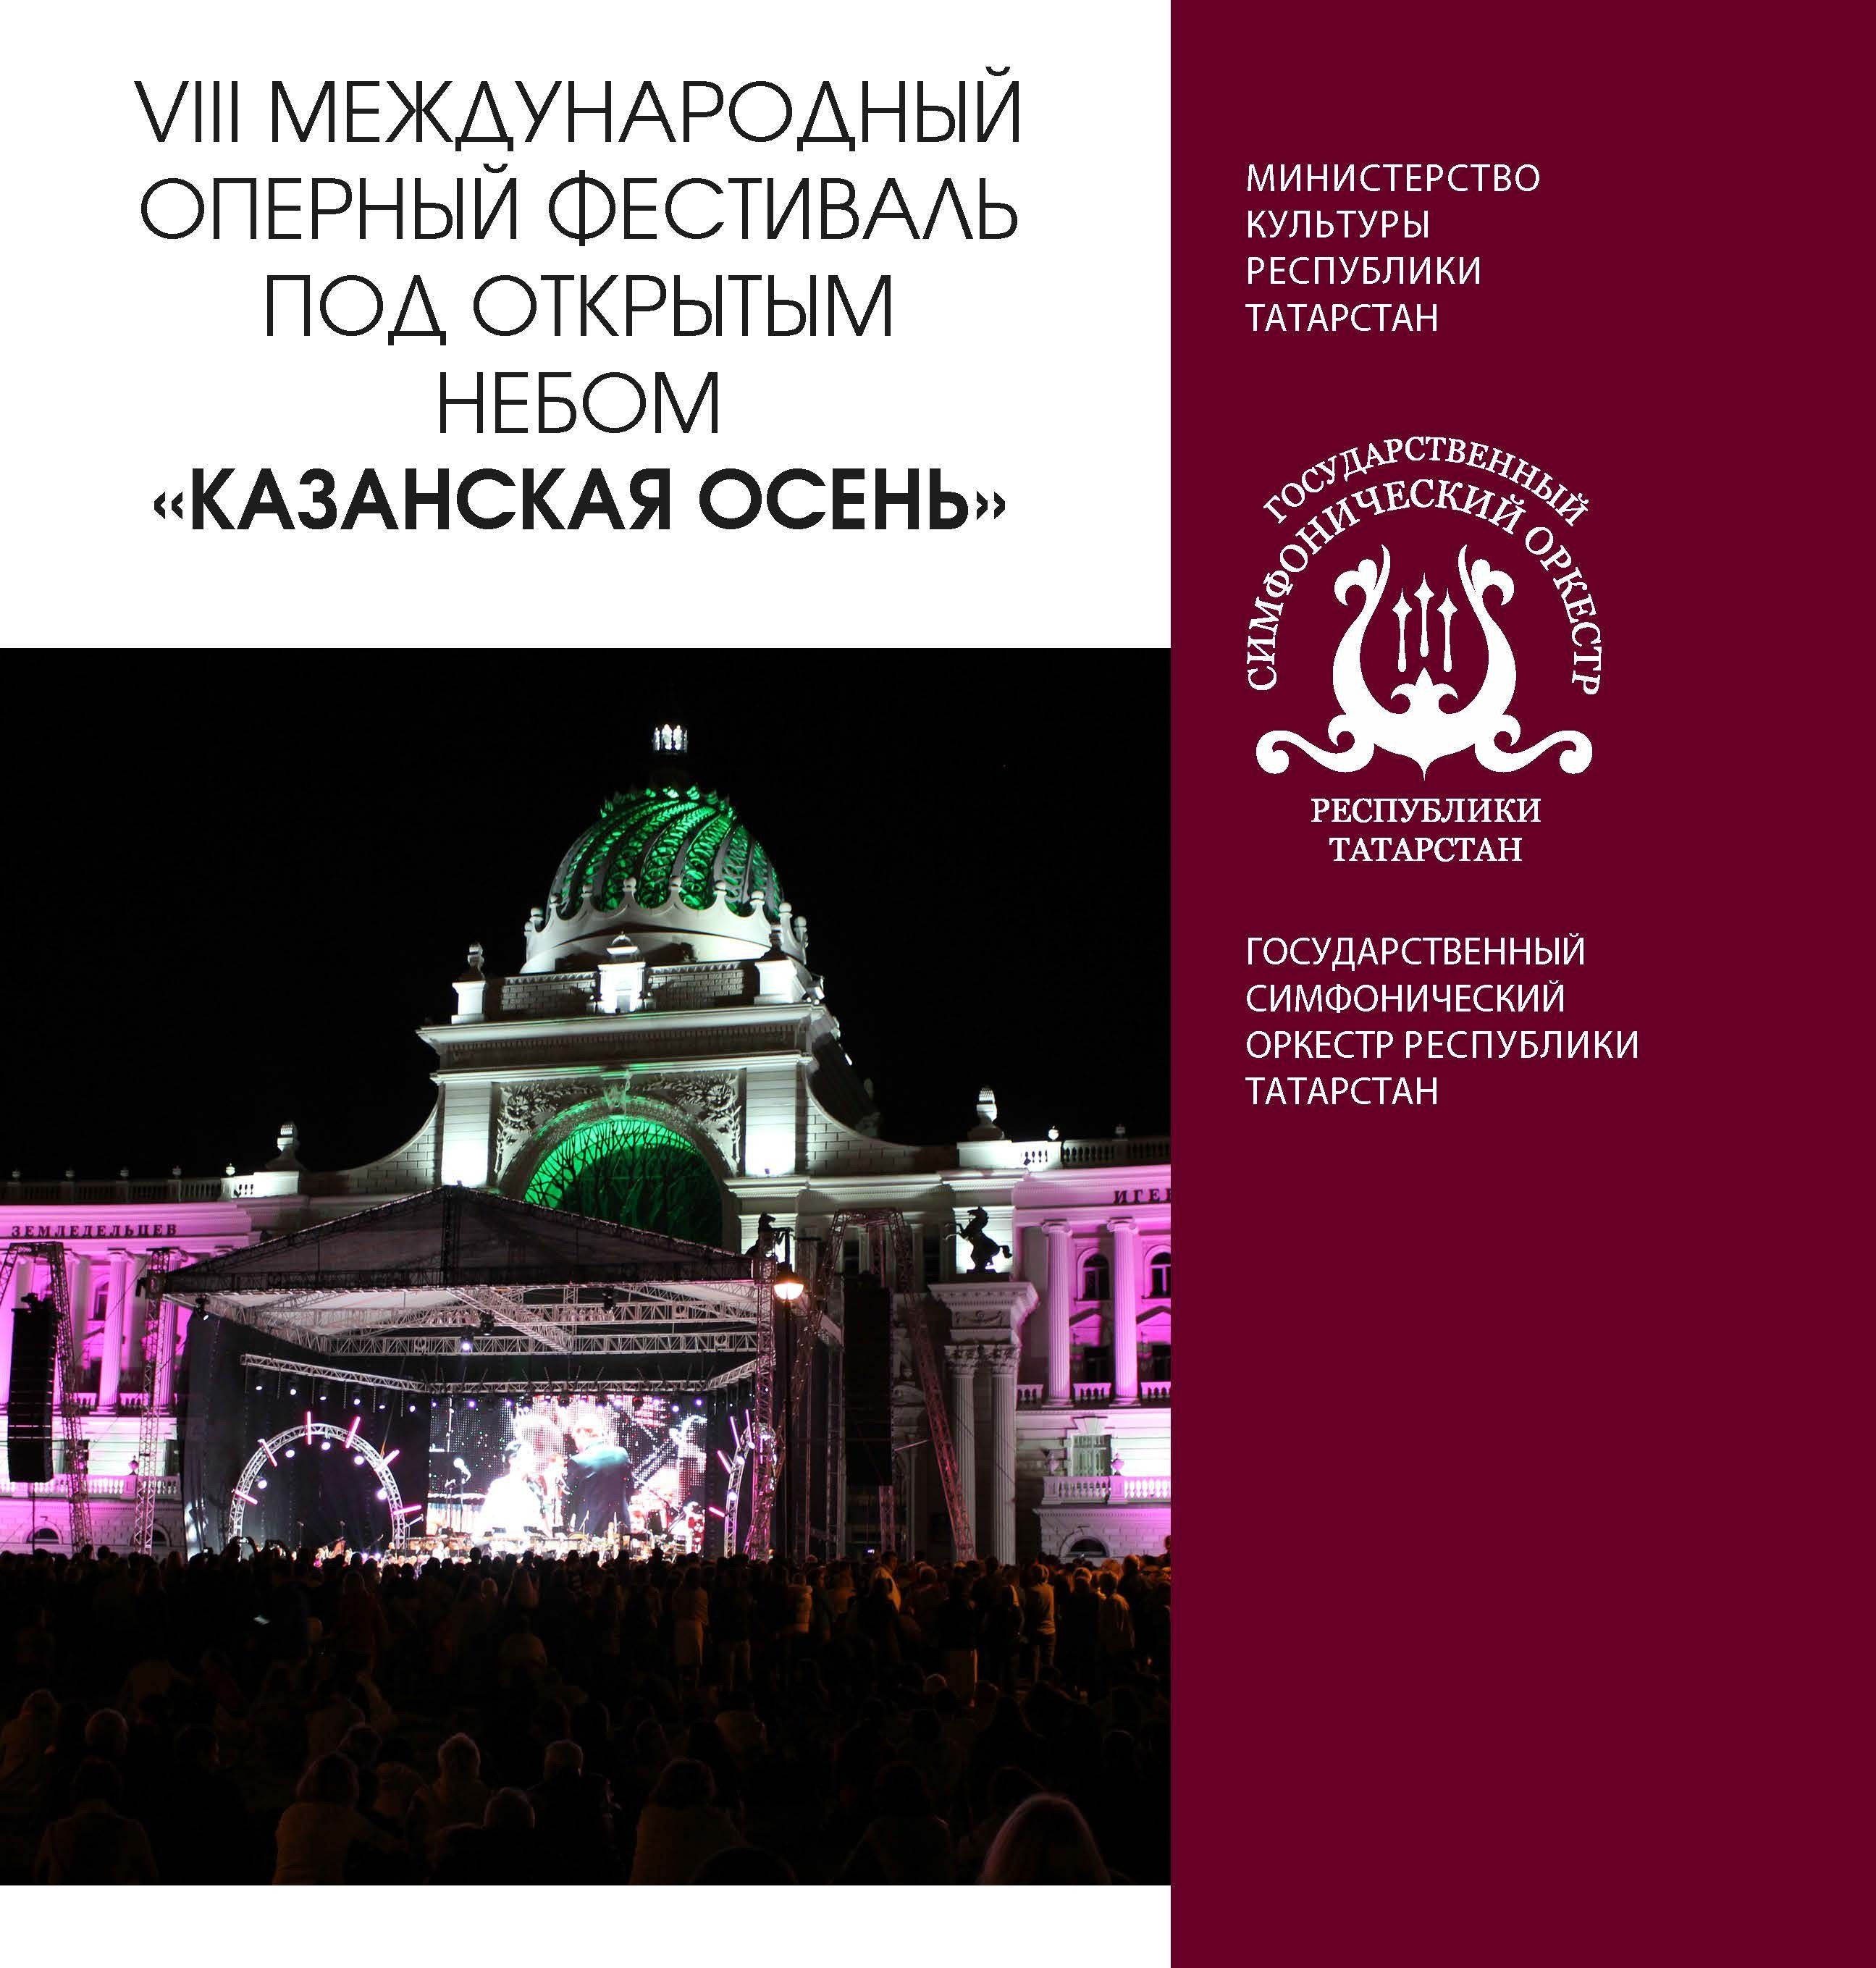 VIII Международный оперный фестиваль под открытым небом «Казанская осень»